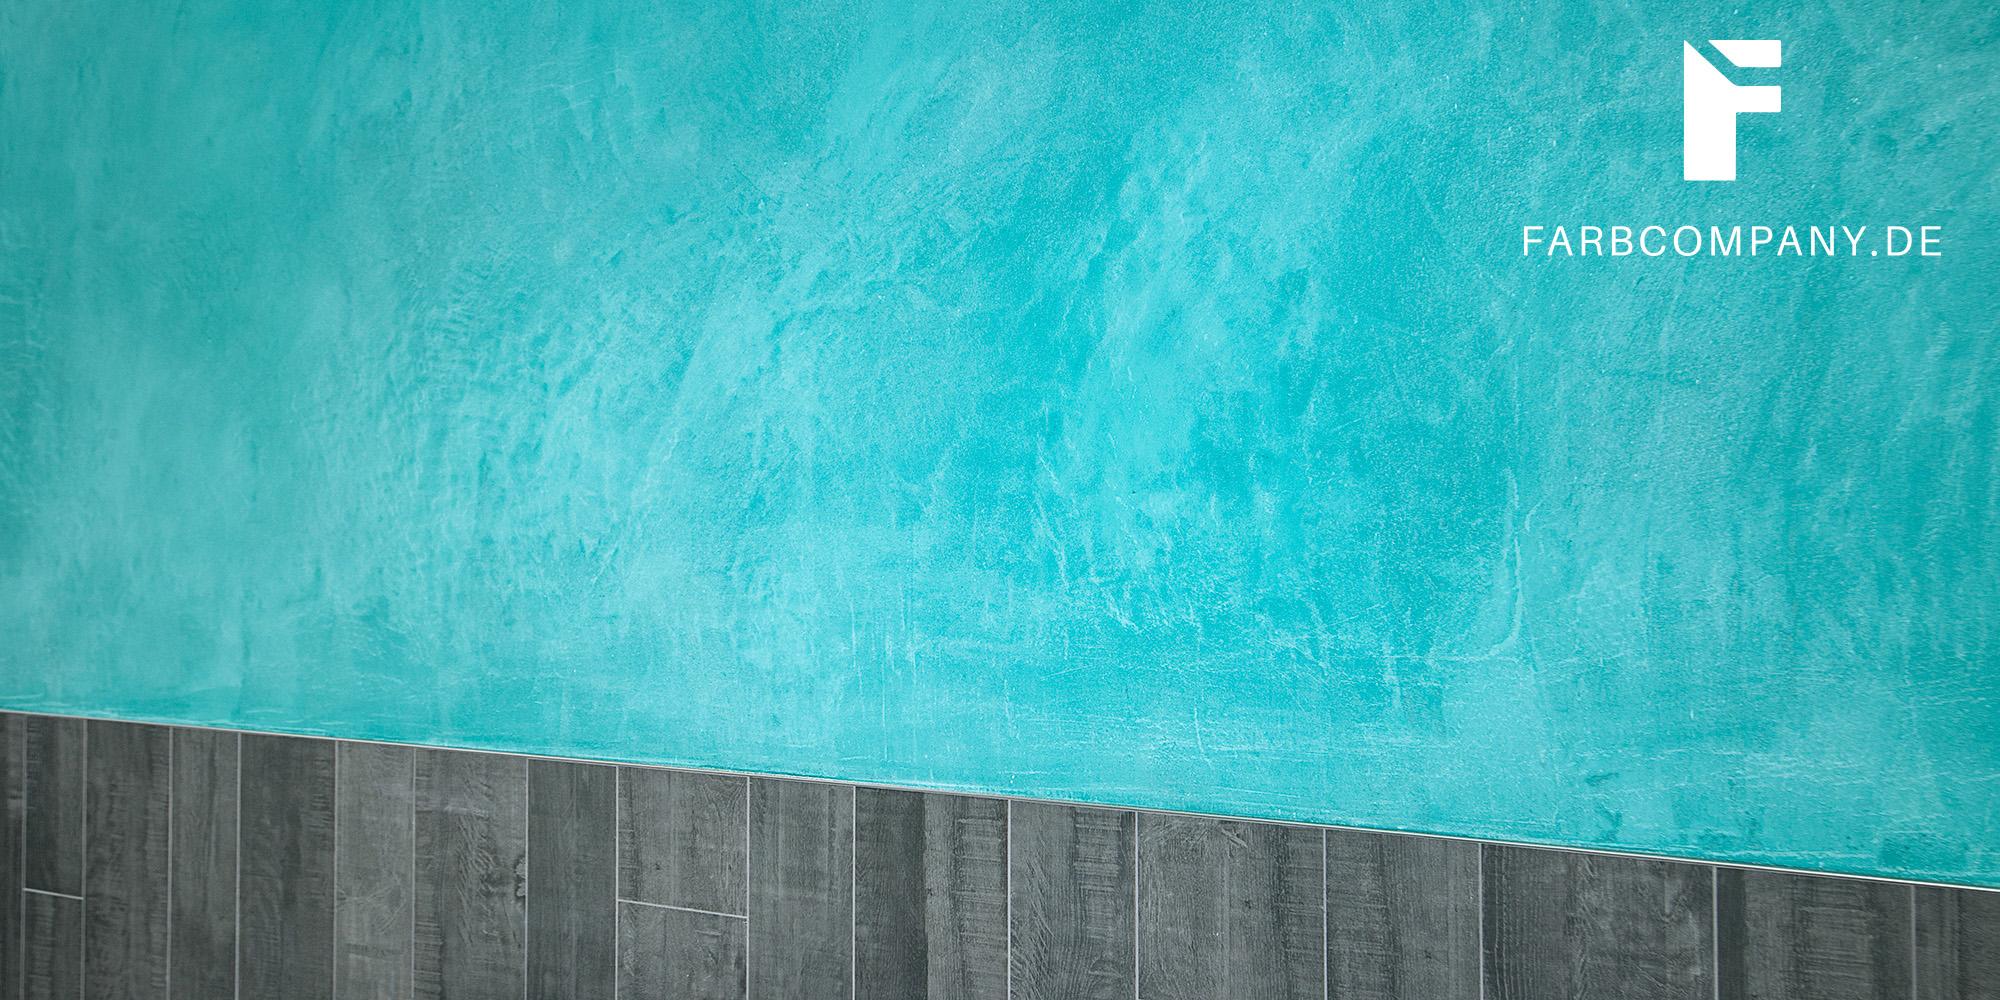 Effektvolle Wandgestaltung/ Badezimmer Wandgestaltung mit Steinspachtel, fugenlos in Hannover, Terra #fugenlosesbad #spachteltechnik #designwand ©Farbcompany/ Mike Schleupner